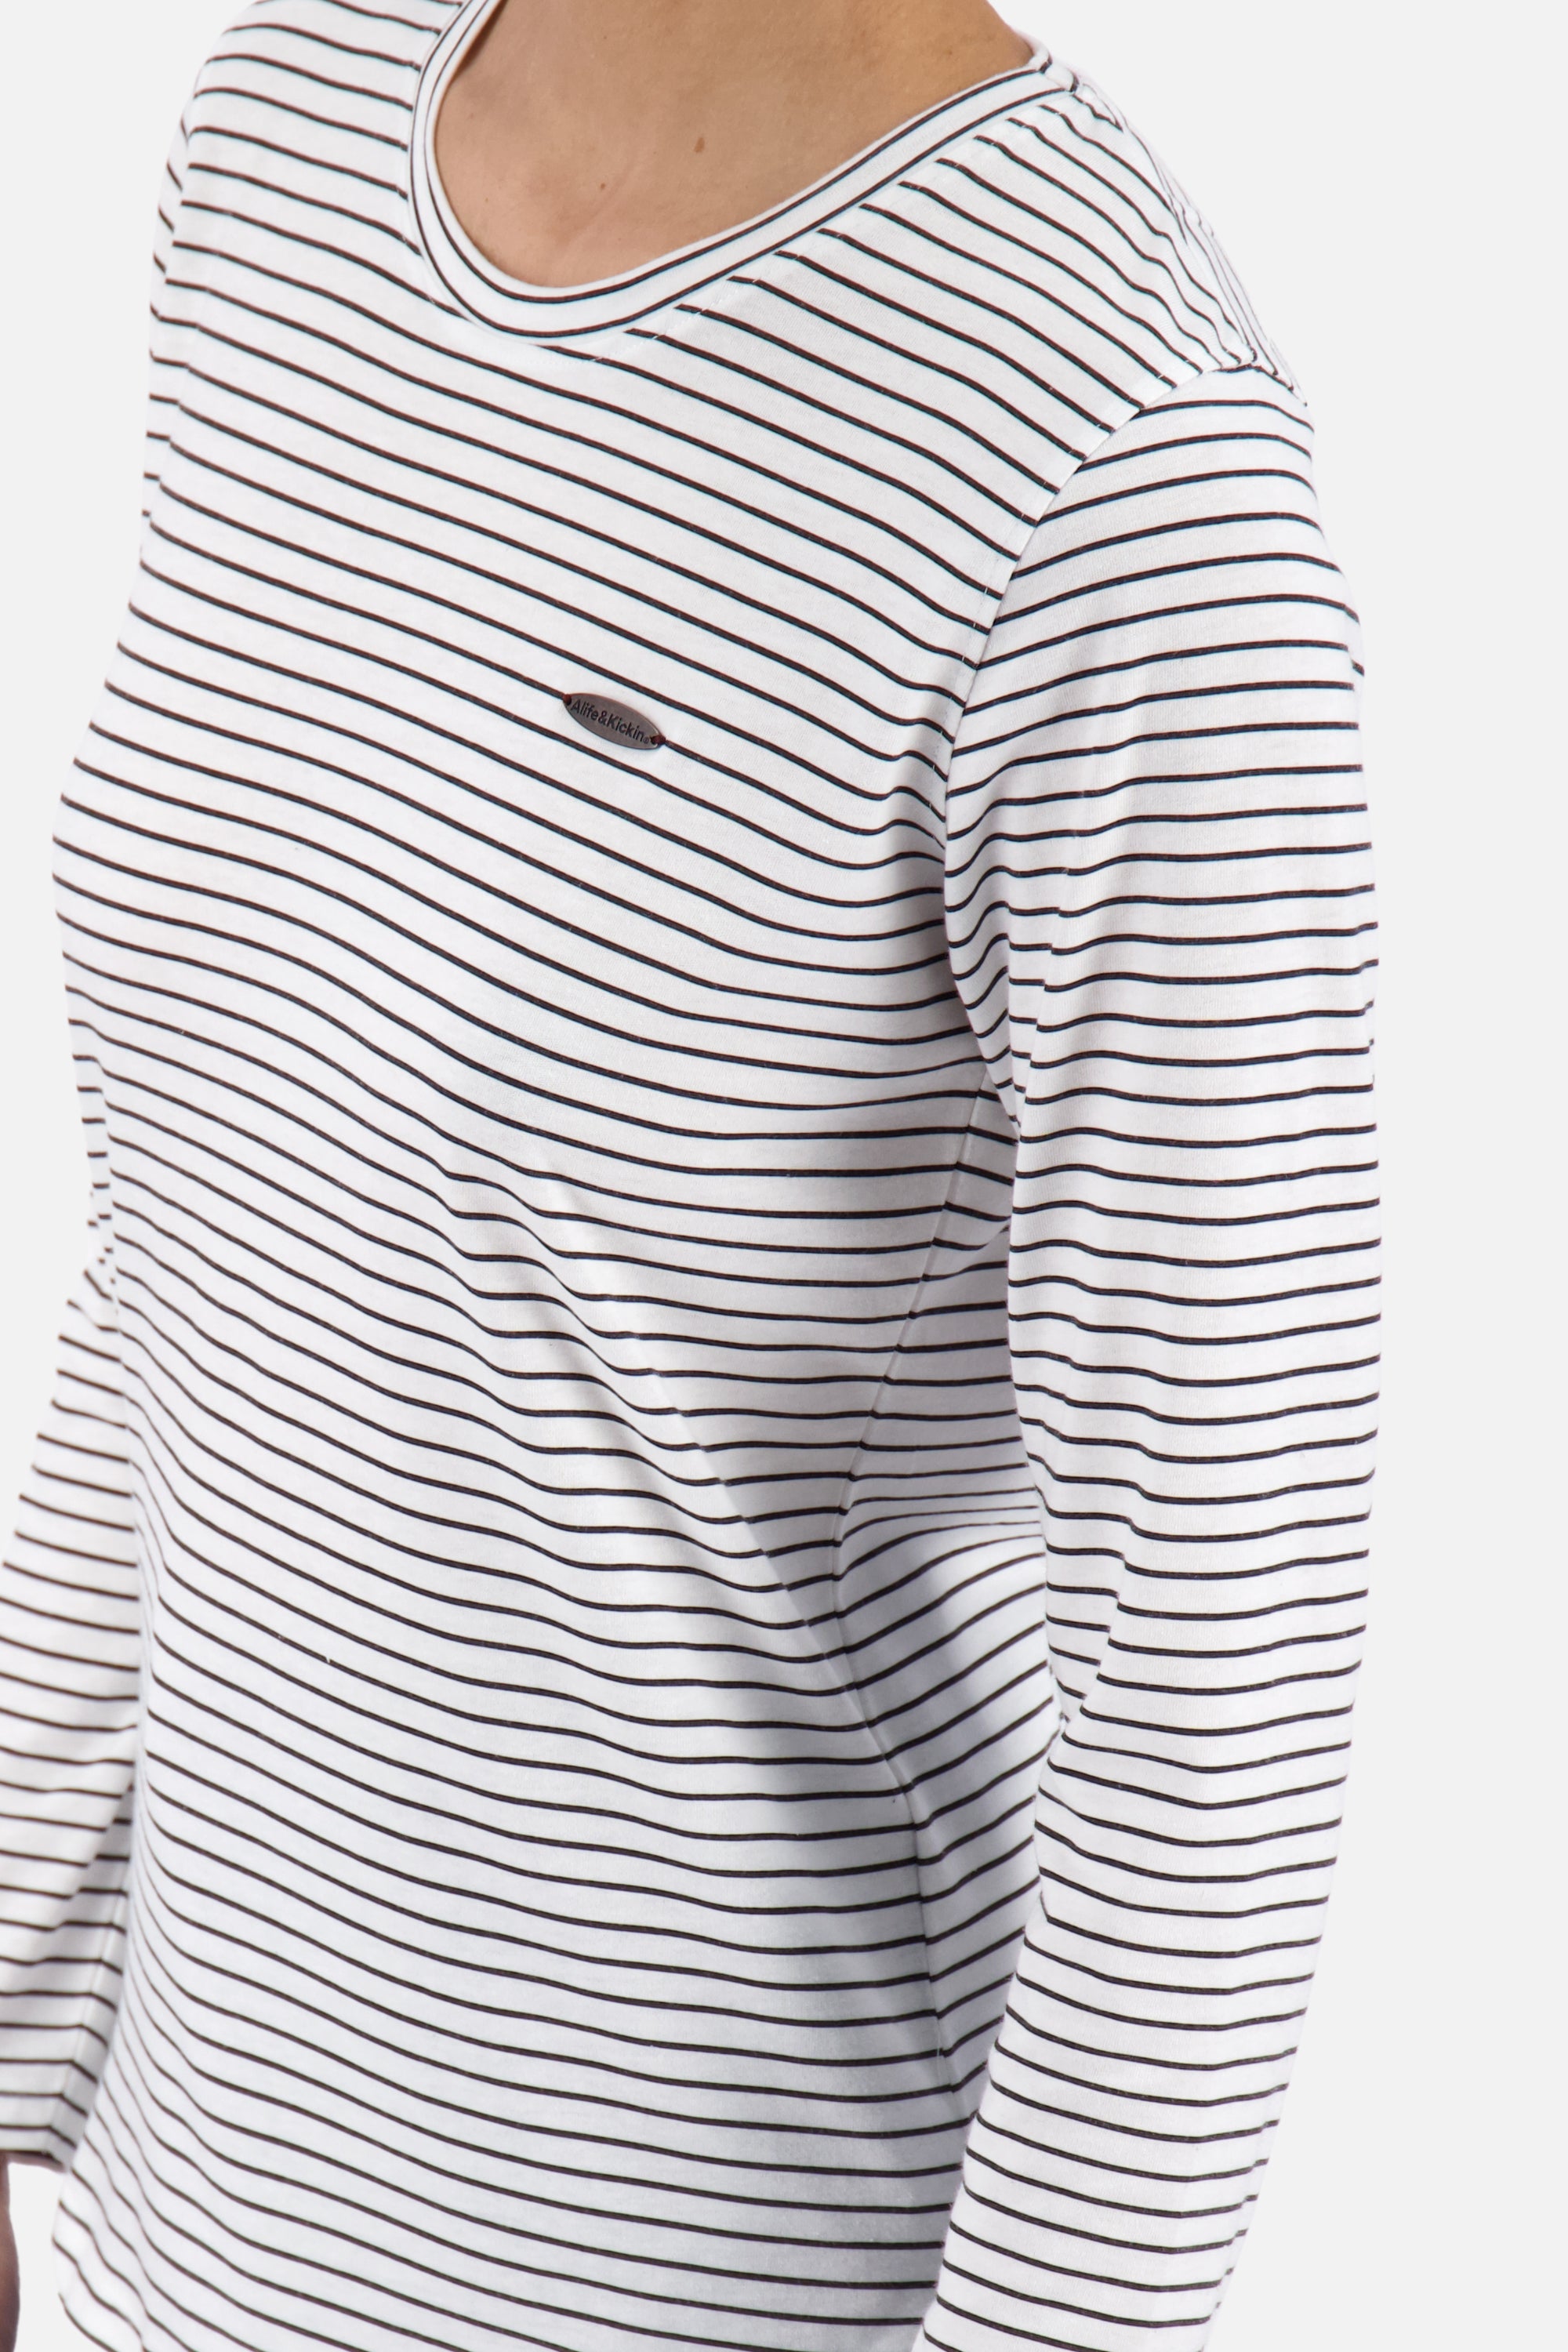 LeaAK Z Longsleeve - Streifen-Look für modebewusste Frauen Weiß